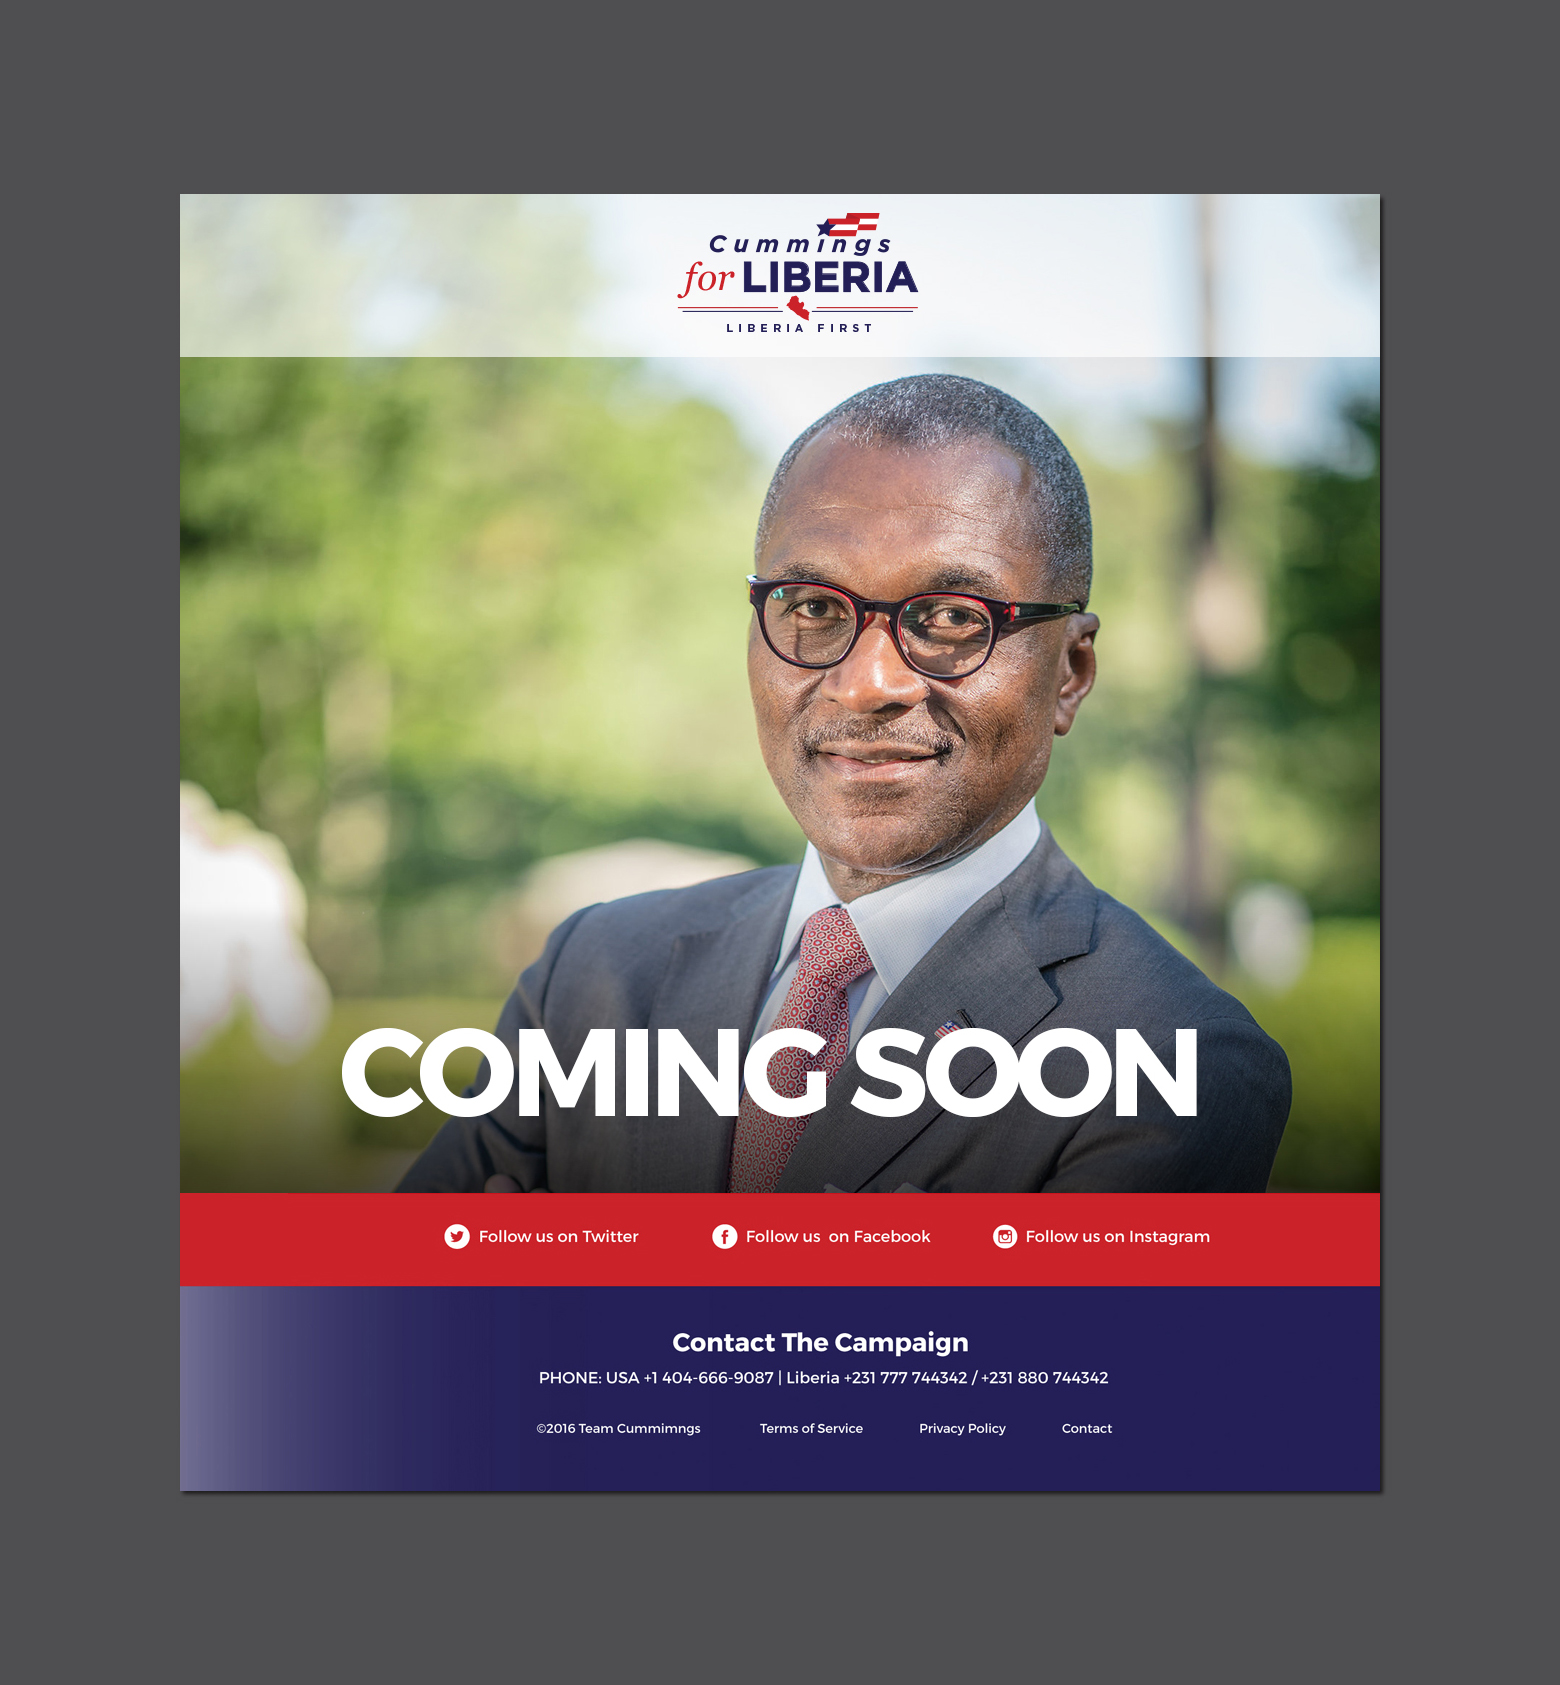 Political Campaign Web Design